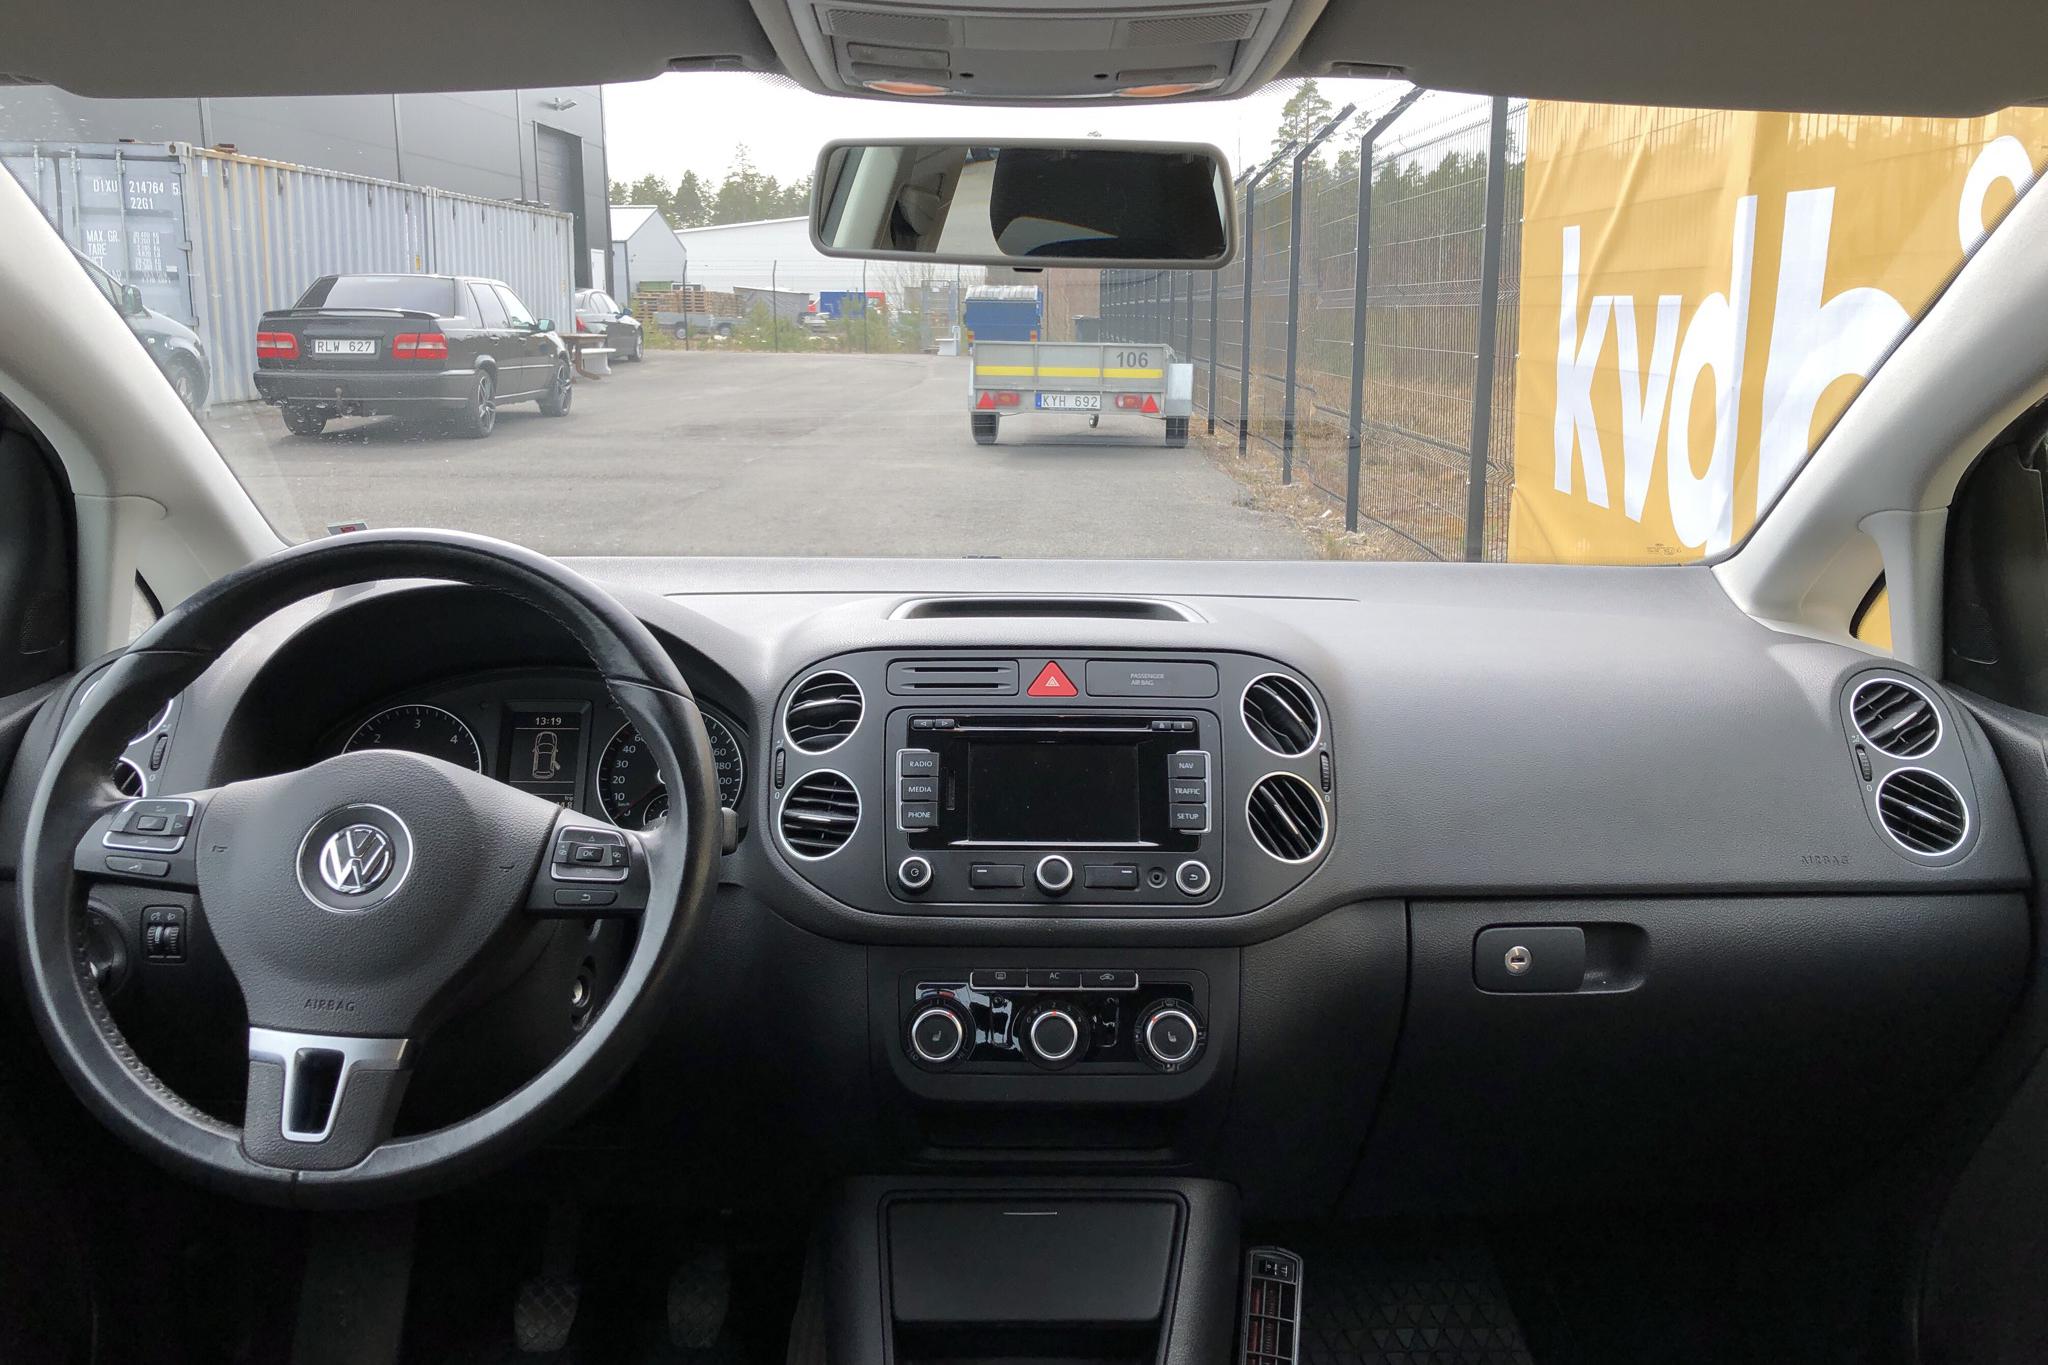 VW Golf VI 1.6 TDI BlueMotion Technology Plus (105hk) - 78 780 km - Manual - brown - 2011